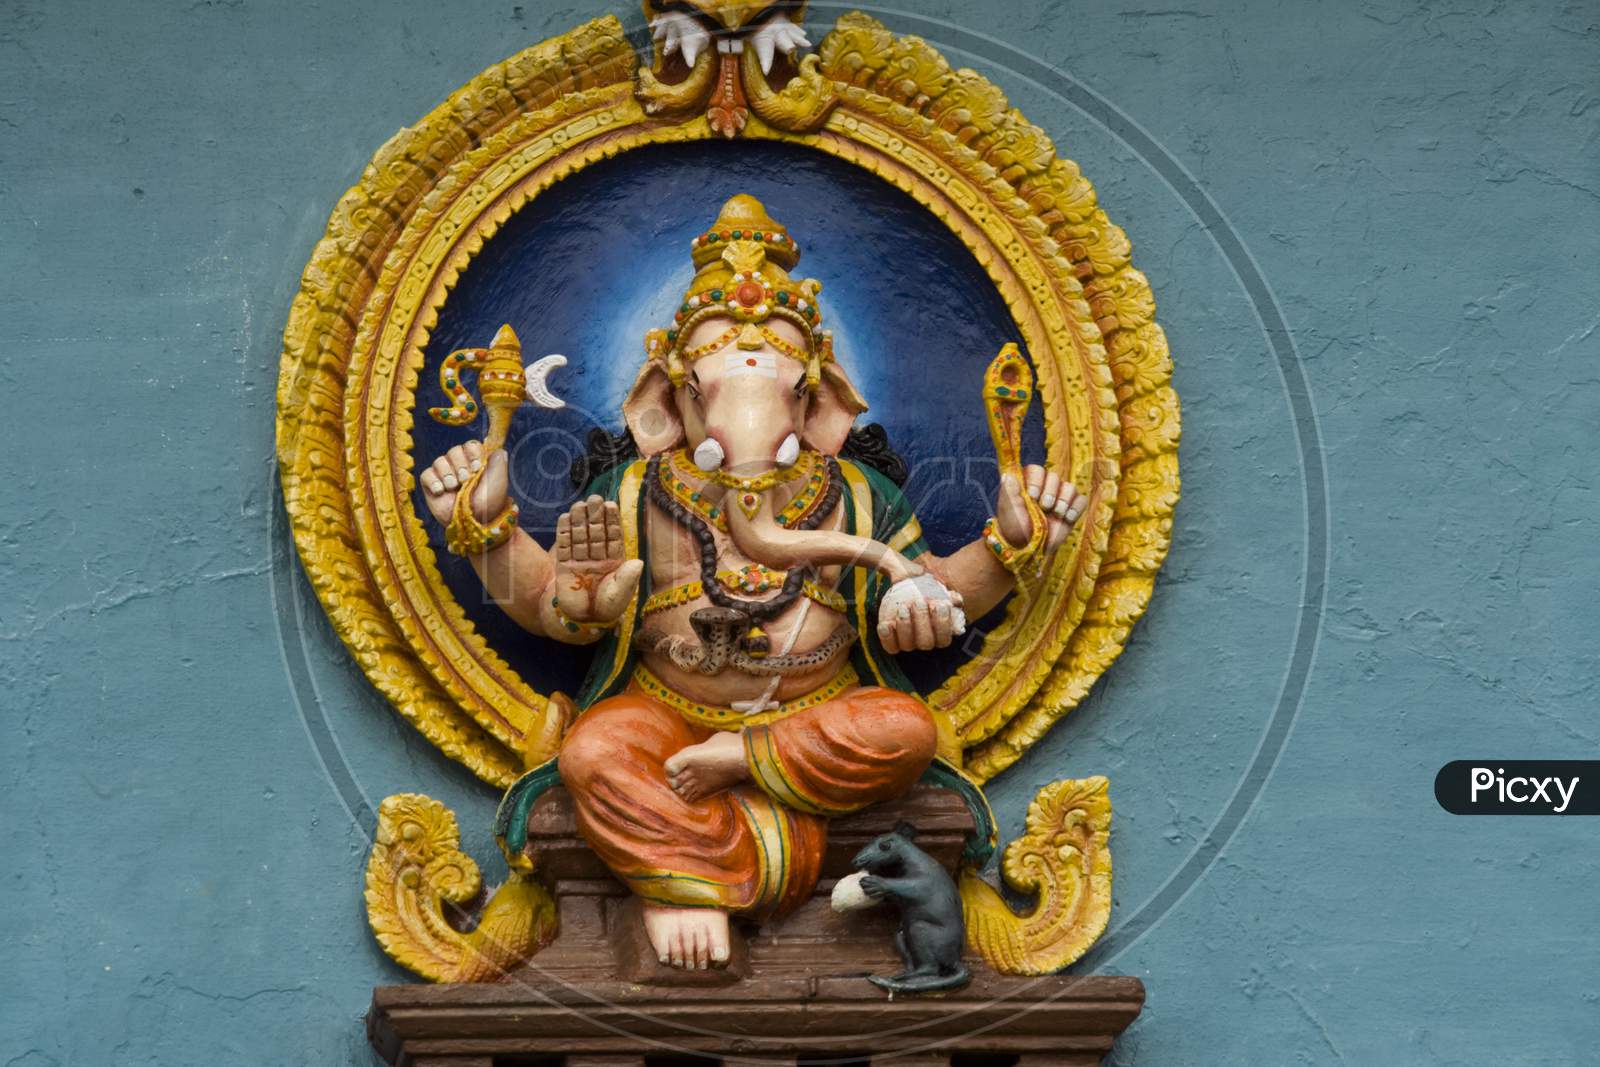 Sitting Lord Ganesha